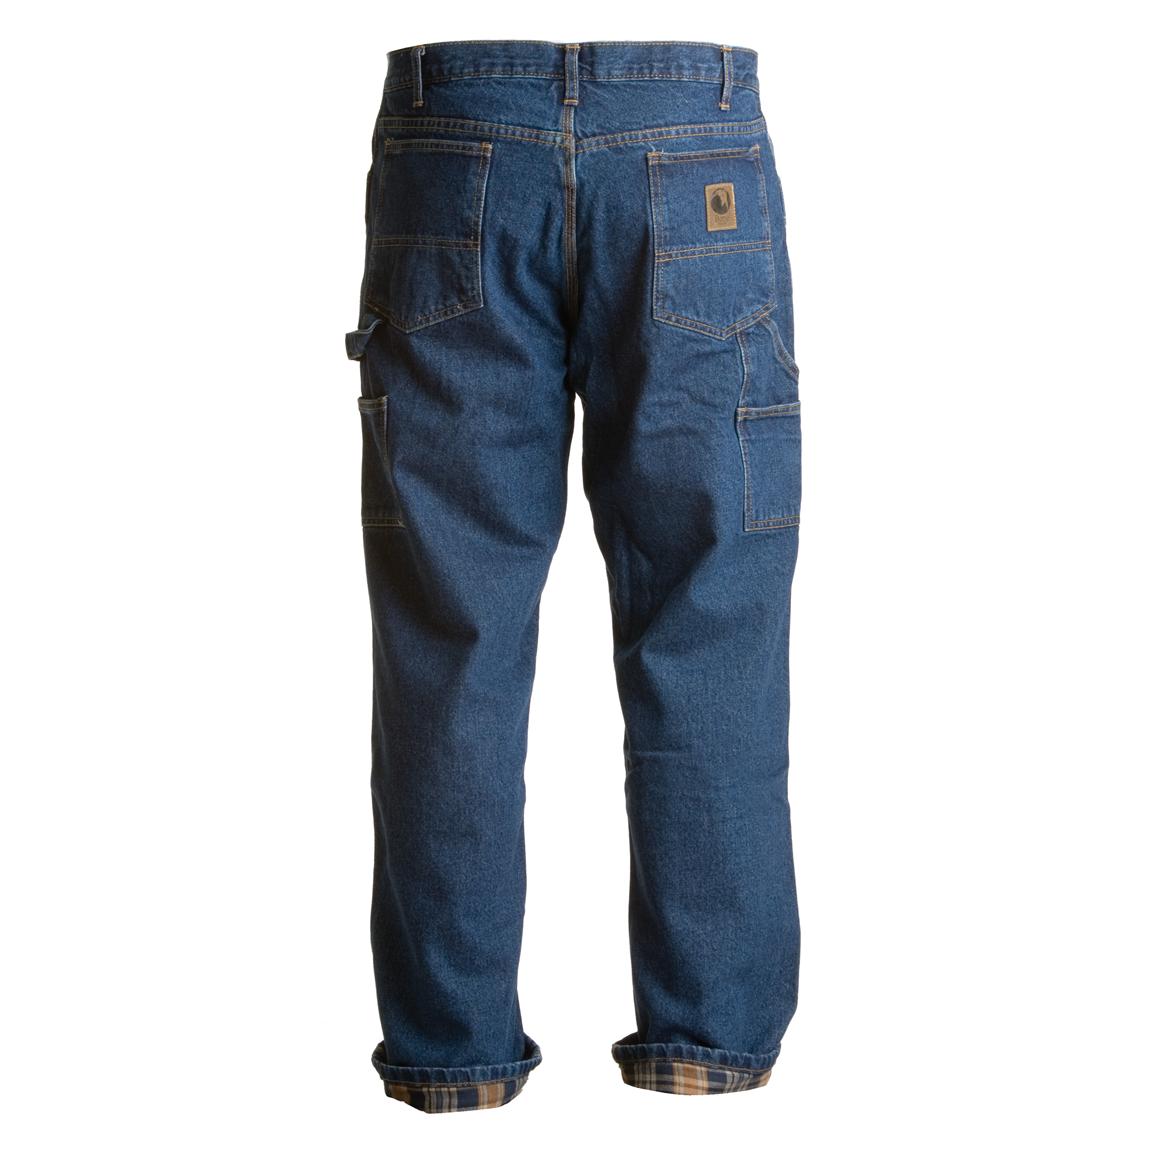 Men's Berne® Flannel - lined Carpenter Jeans - 226884, Jeans & Pants at ...